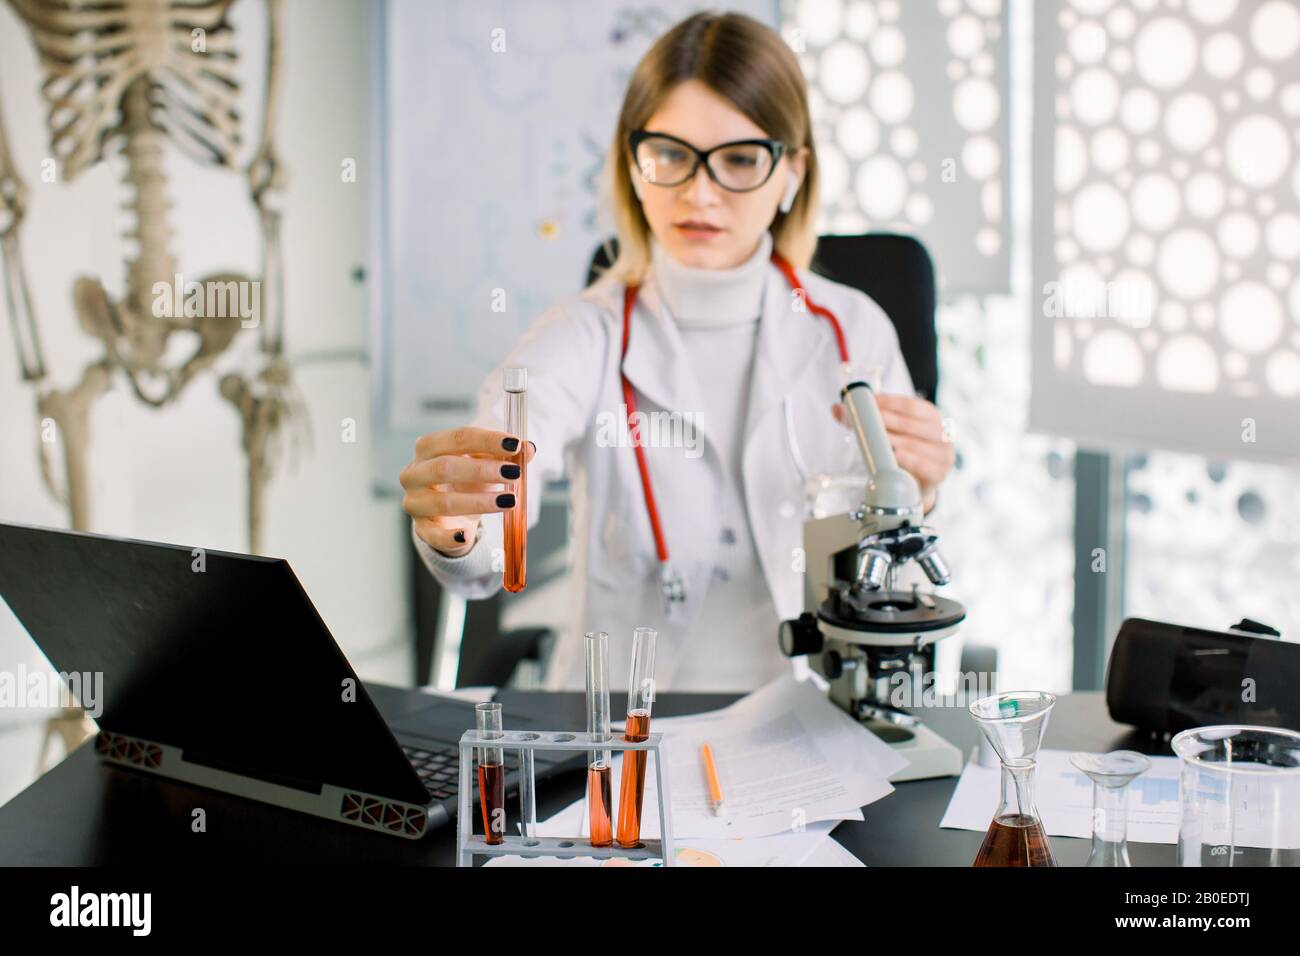 Giovane abbastanza caucasica donna scienziato guardando il campione scientifico, provetta con liquido rosso in mano, mentre seduto al tavolo con il portatile Foto Stock